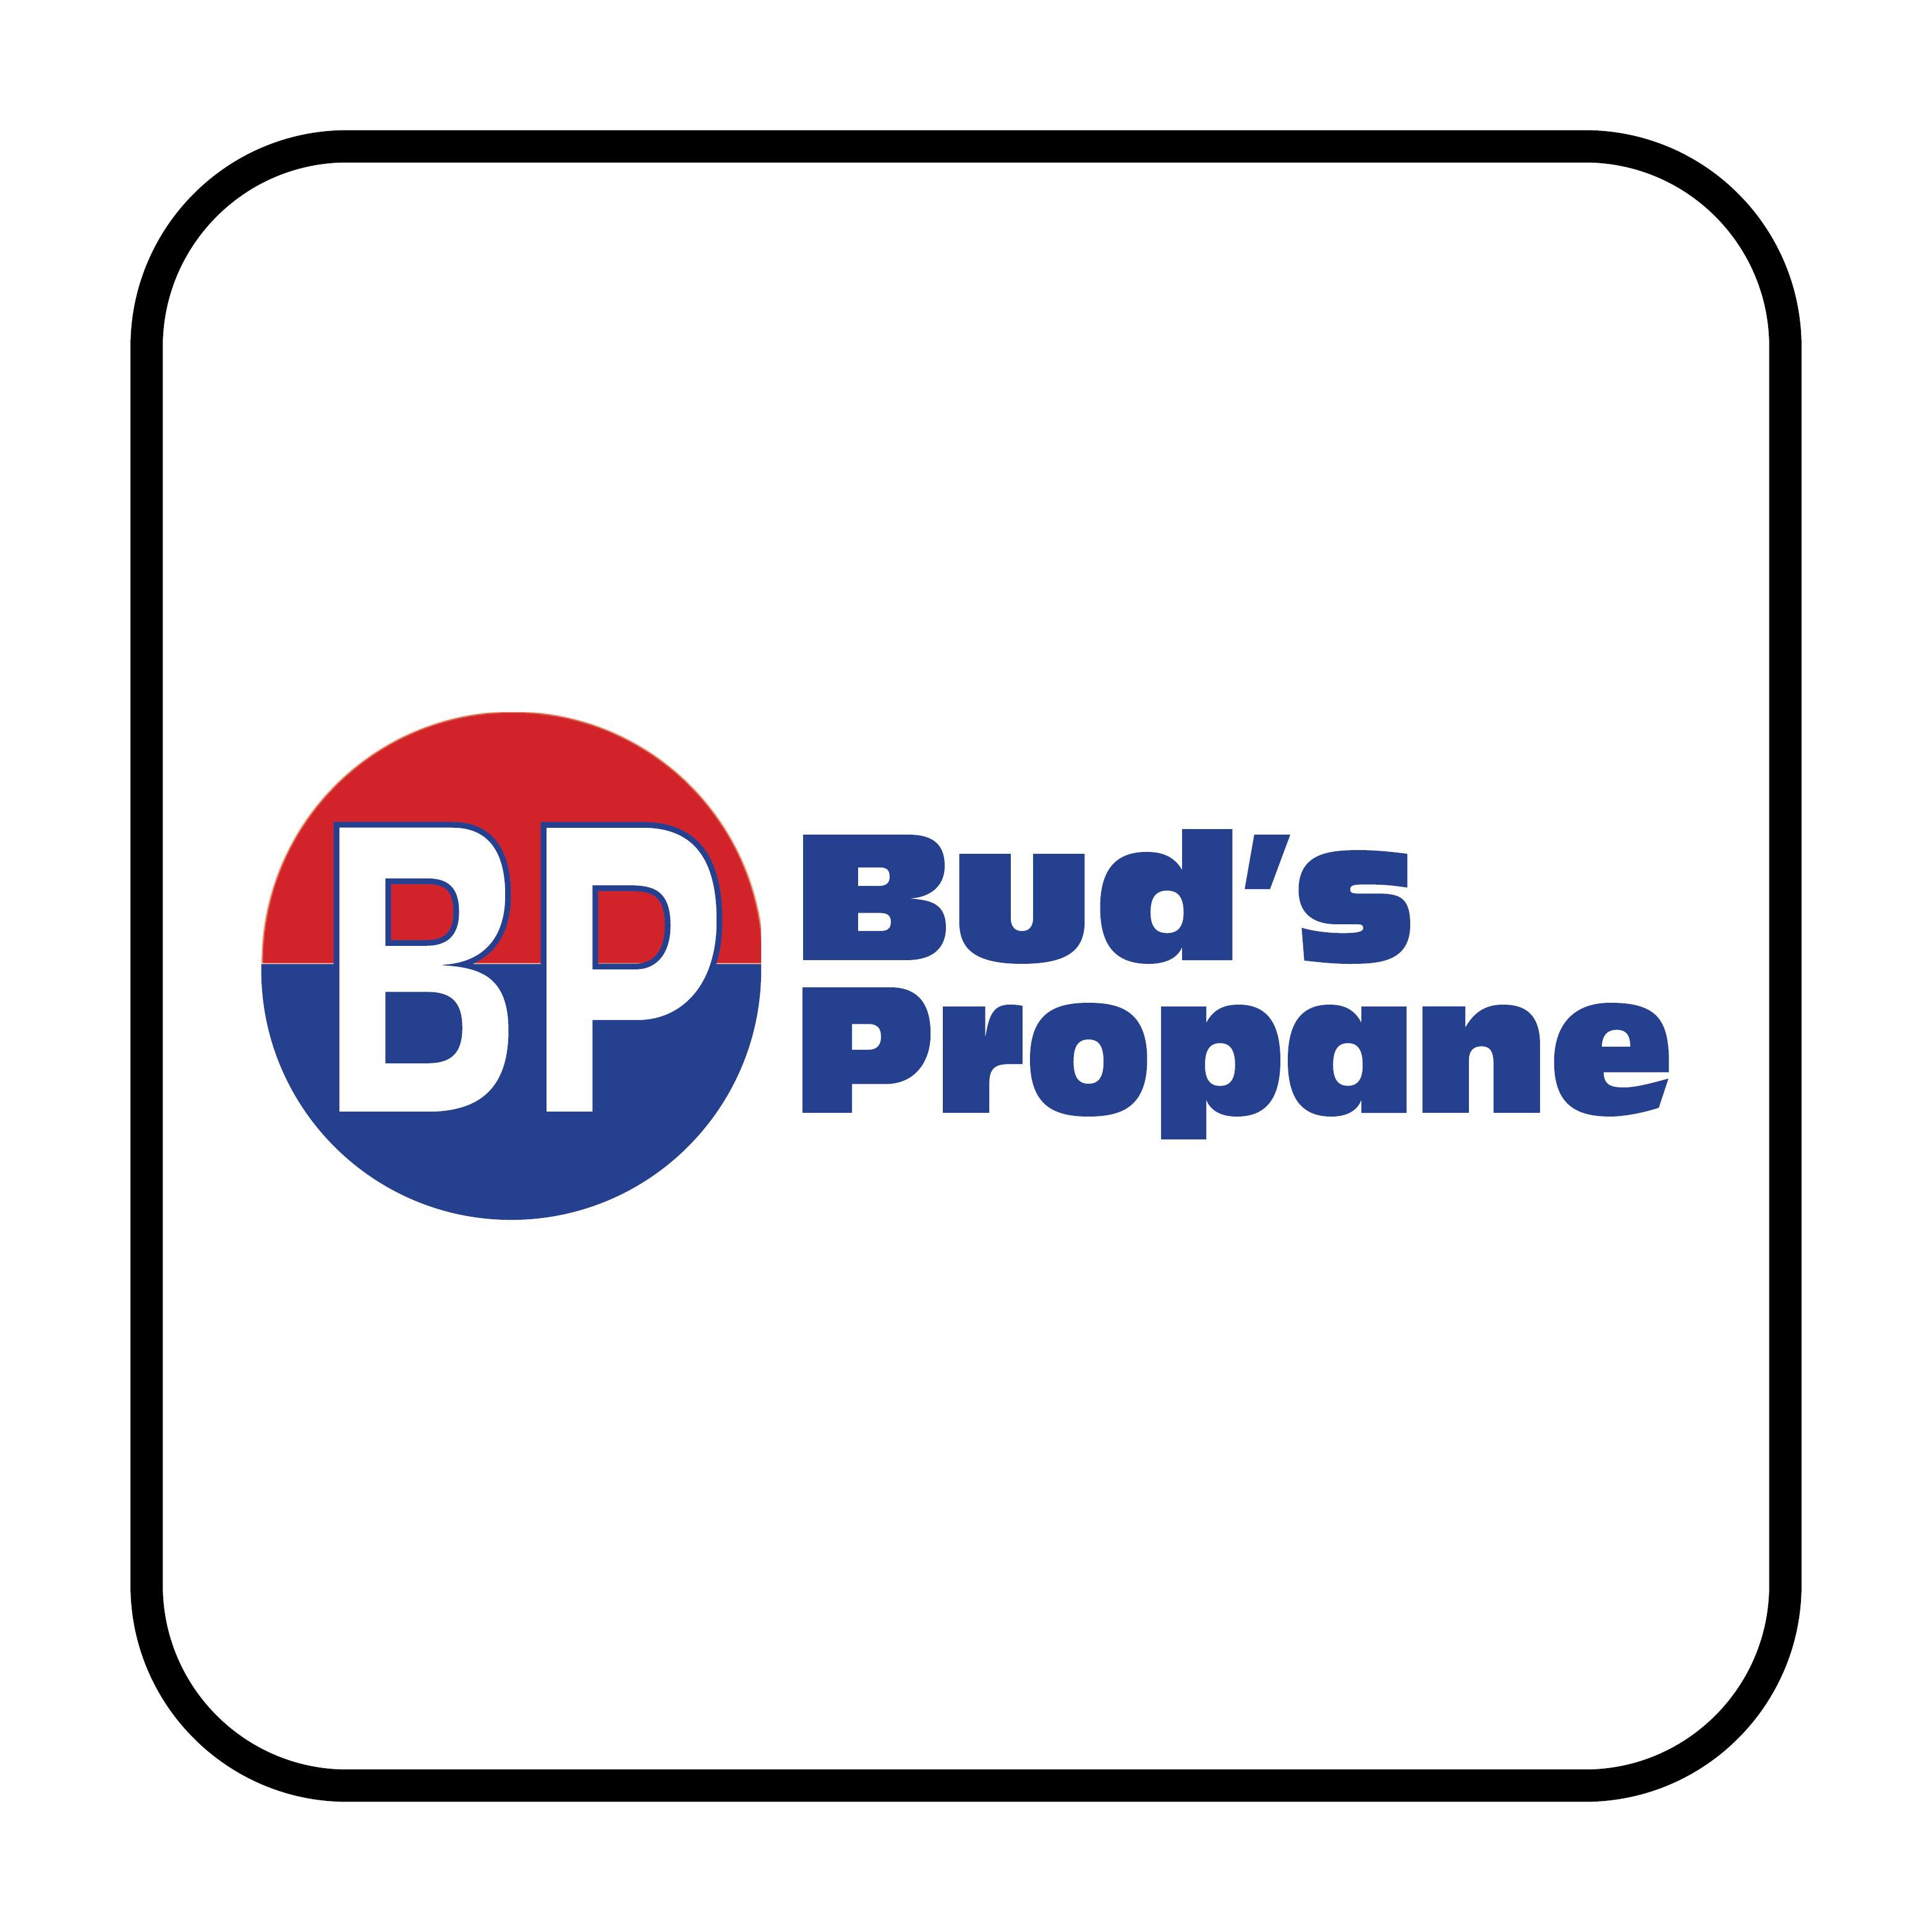 Bud's Propane - Pueblo West, CO - (719)547-1214 | ShowMeLocal.com